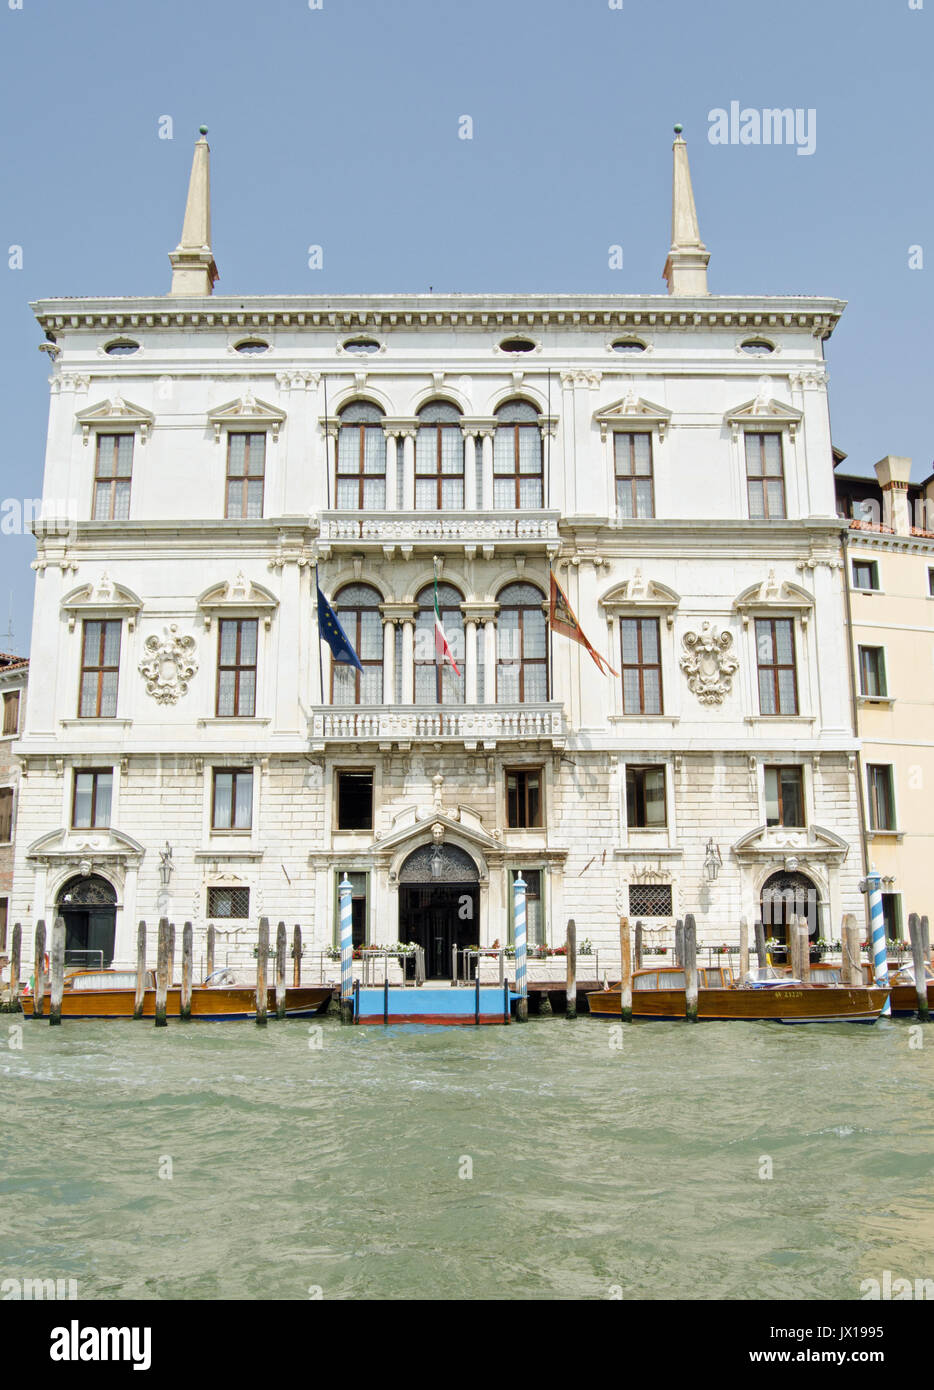 Die herrlichen Palazzo Balbi mit Blick auf den Canale Grande in Venedig. Jetzt die Heimat der Präsident und der lokalen Regierung der Region Venetien in Italien. Stockfoto